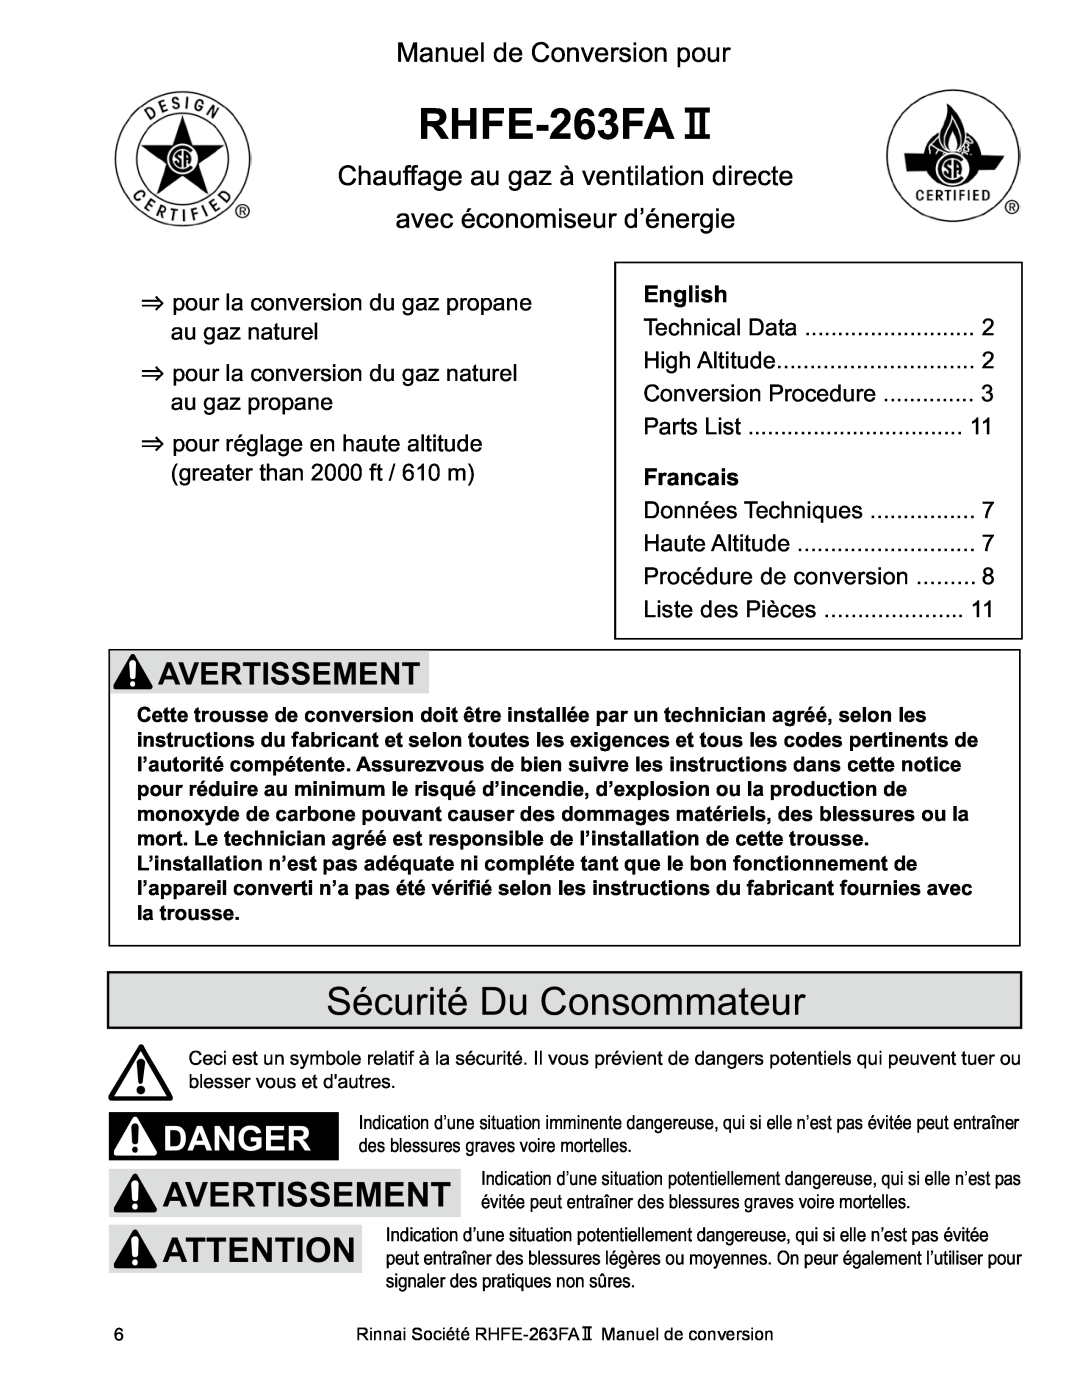 Rinnai RHFE-263FA II manual RHFE-263FAⅡ, Sécurité Du Consommateur, Avertissement, Manuel de Conversion pour 